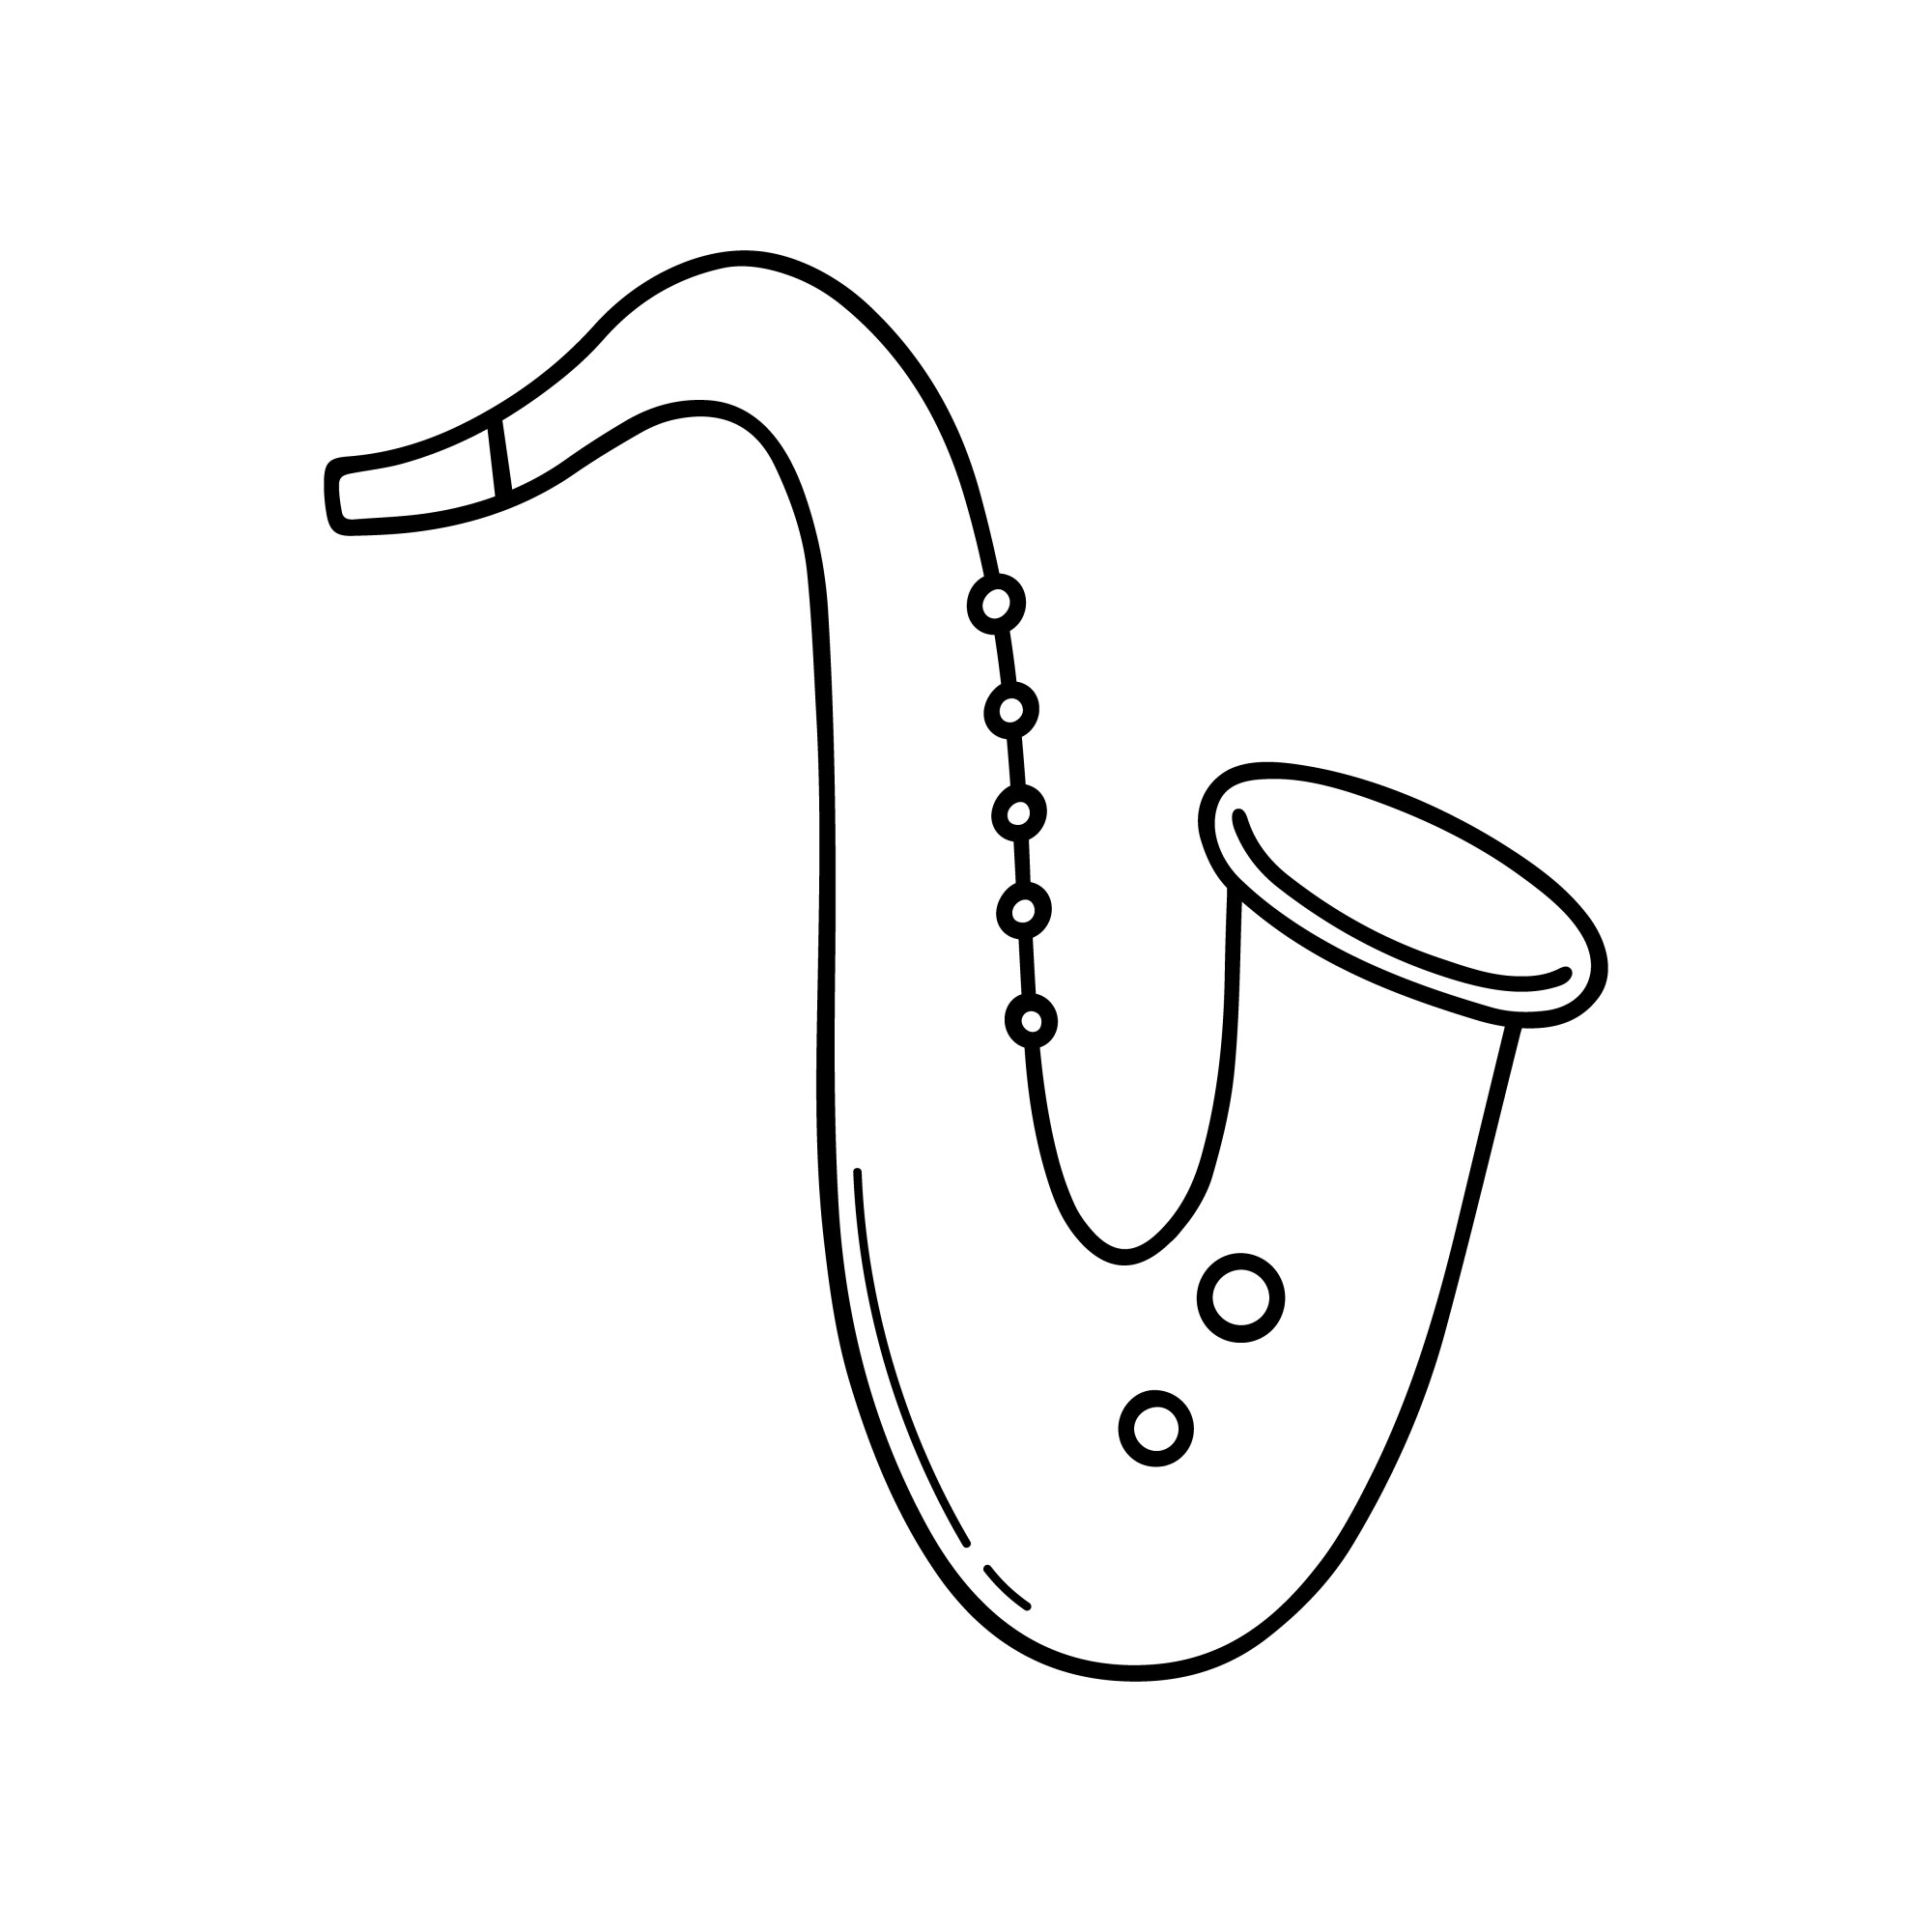 Раскраска для детей: детская игрушка саксофон